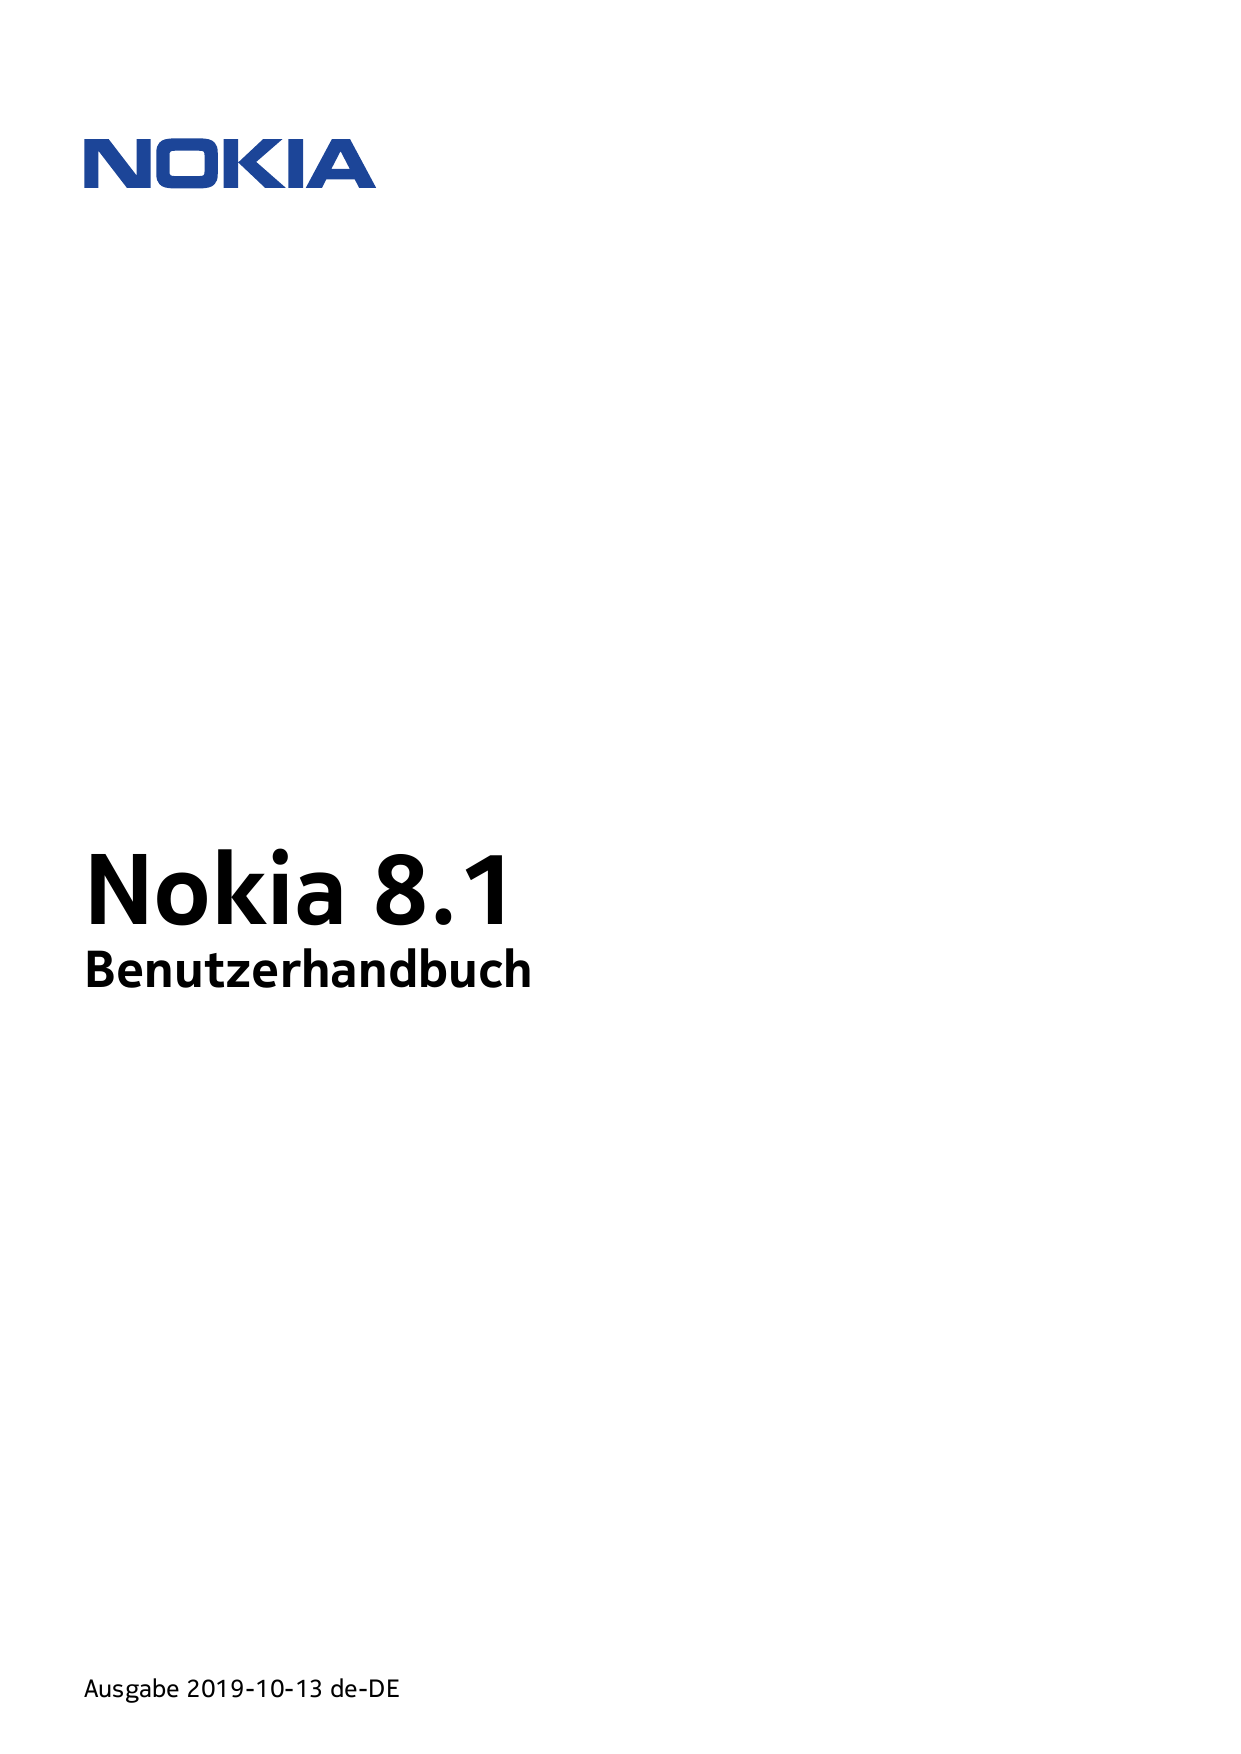 Nokia 8.1BenutzerhandbuchAusgabe 2019-10-13 de-DE